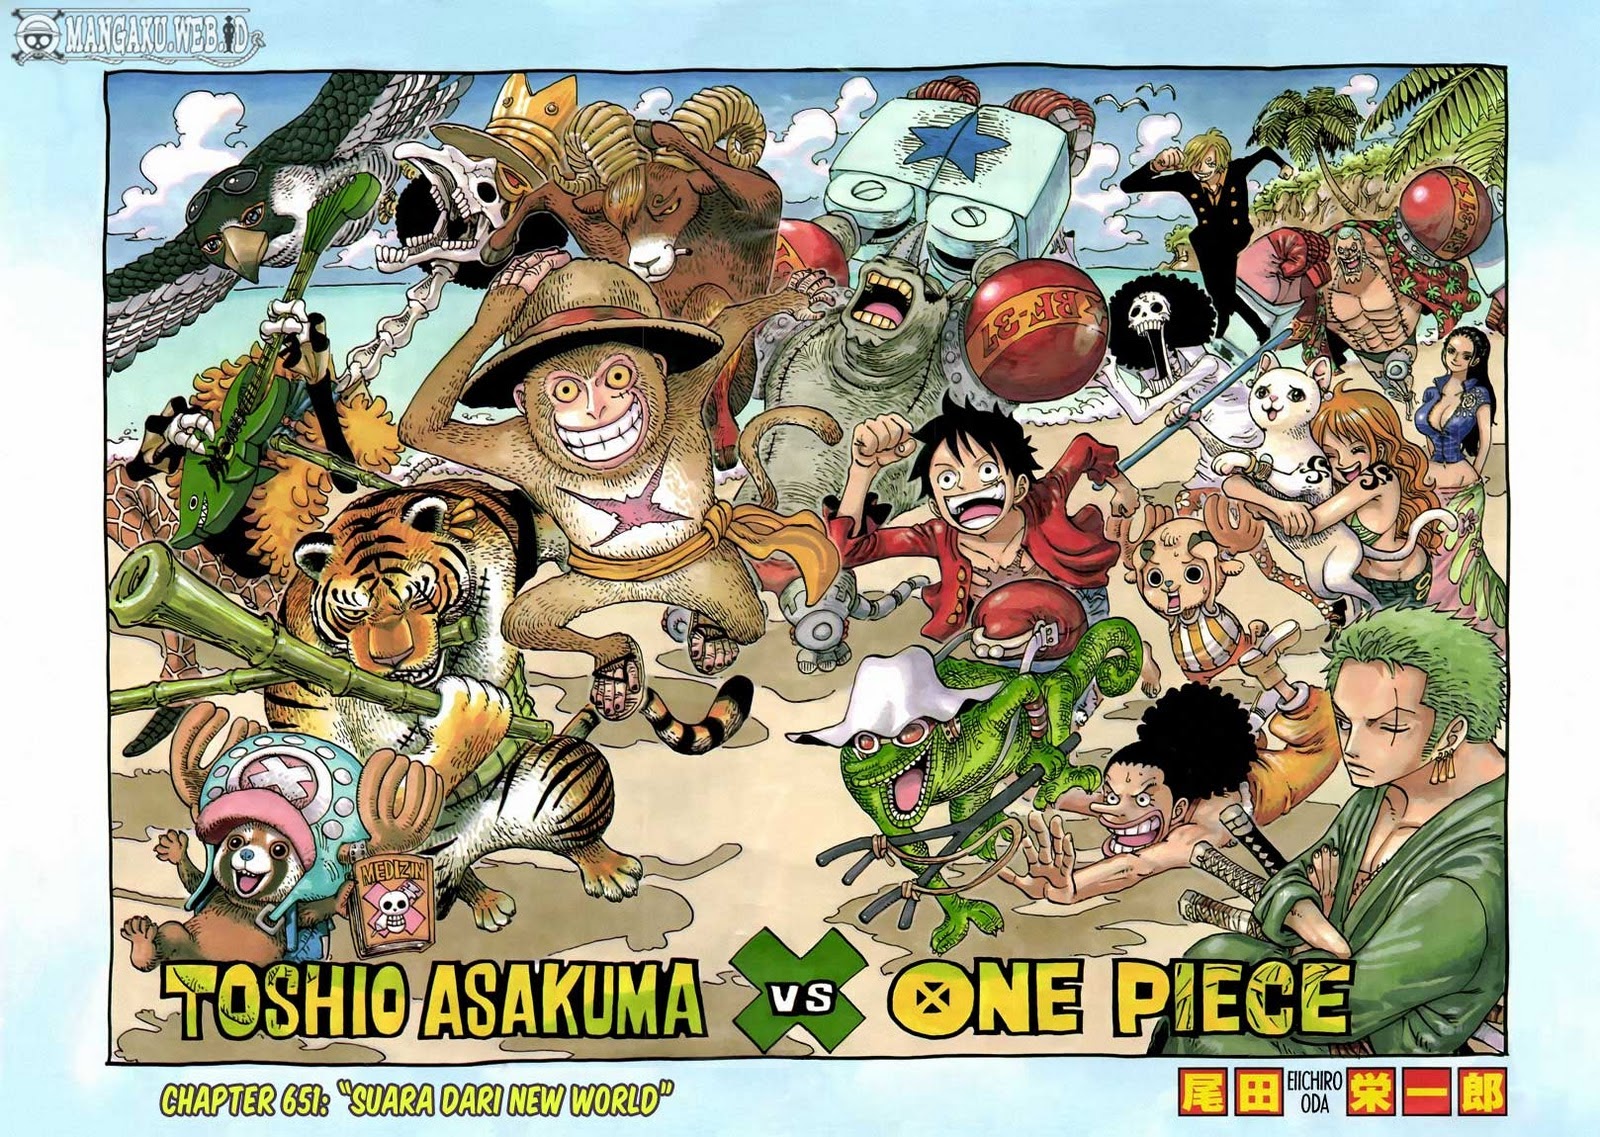 One Piece Chapter 651 – suara dari new world Image 1